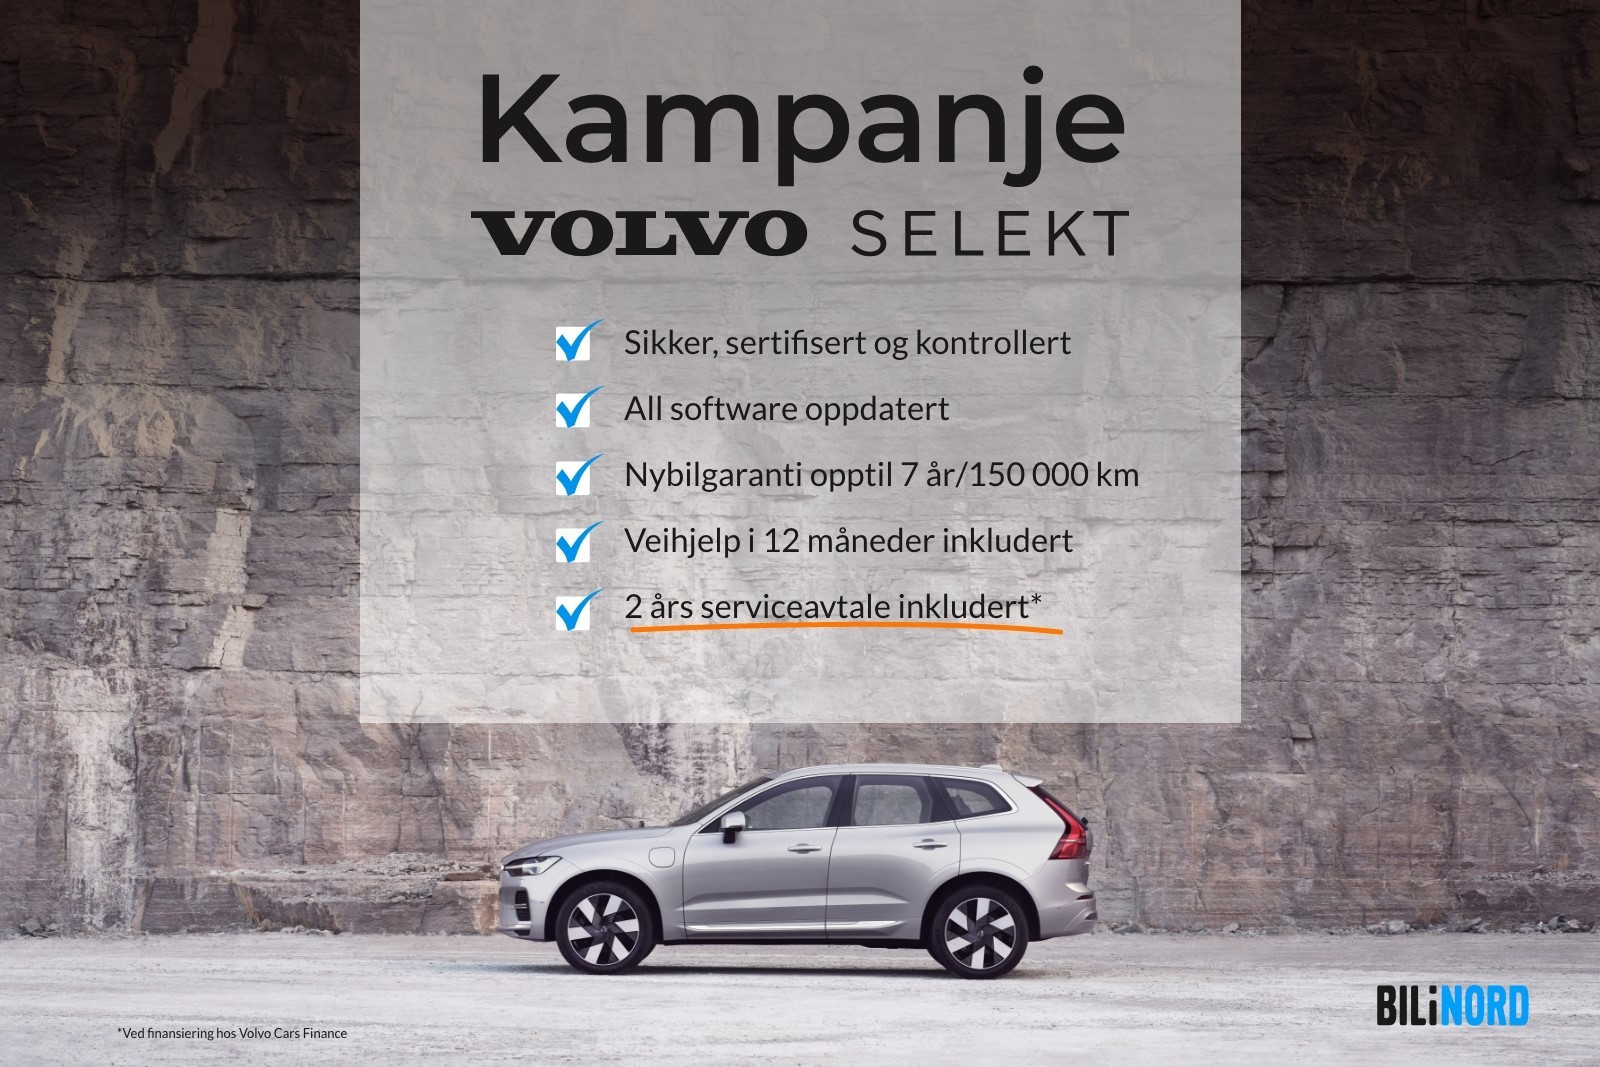 Volvo Selekt kampanje - For mer info - kontakt Tom Erik på telefon 476 55 444